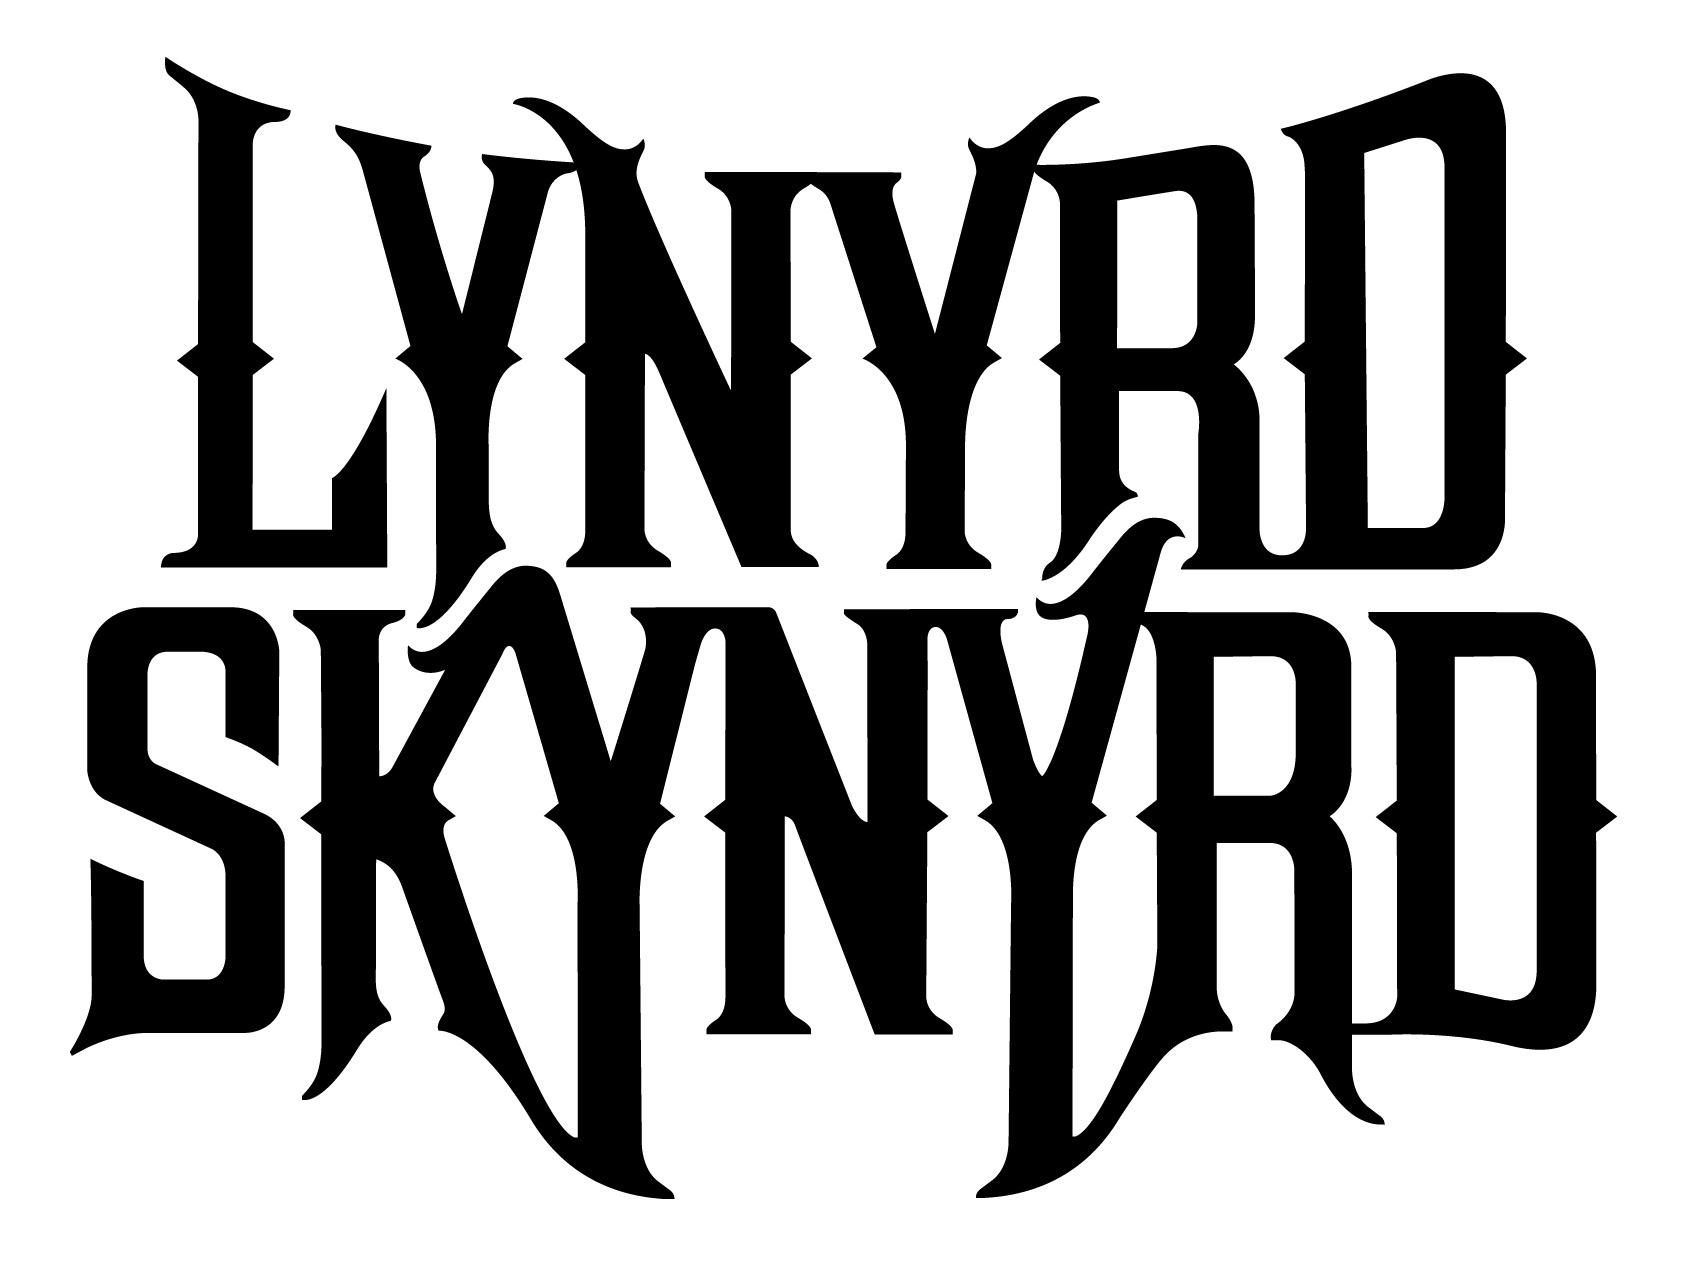 Lynyrd Skynyrd at 2048 x 2048 iPad size wallpapers HD quality